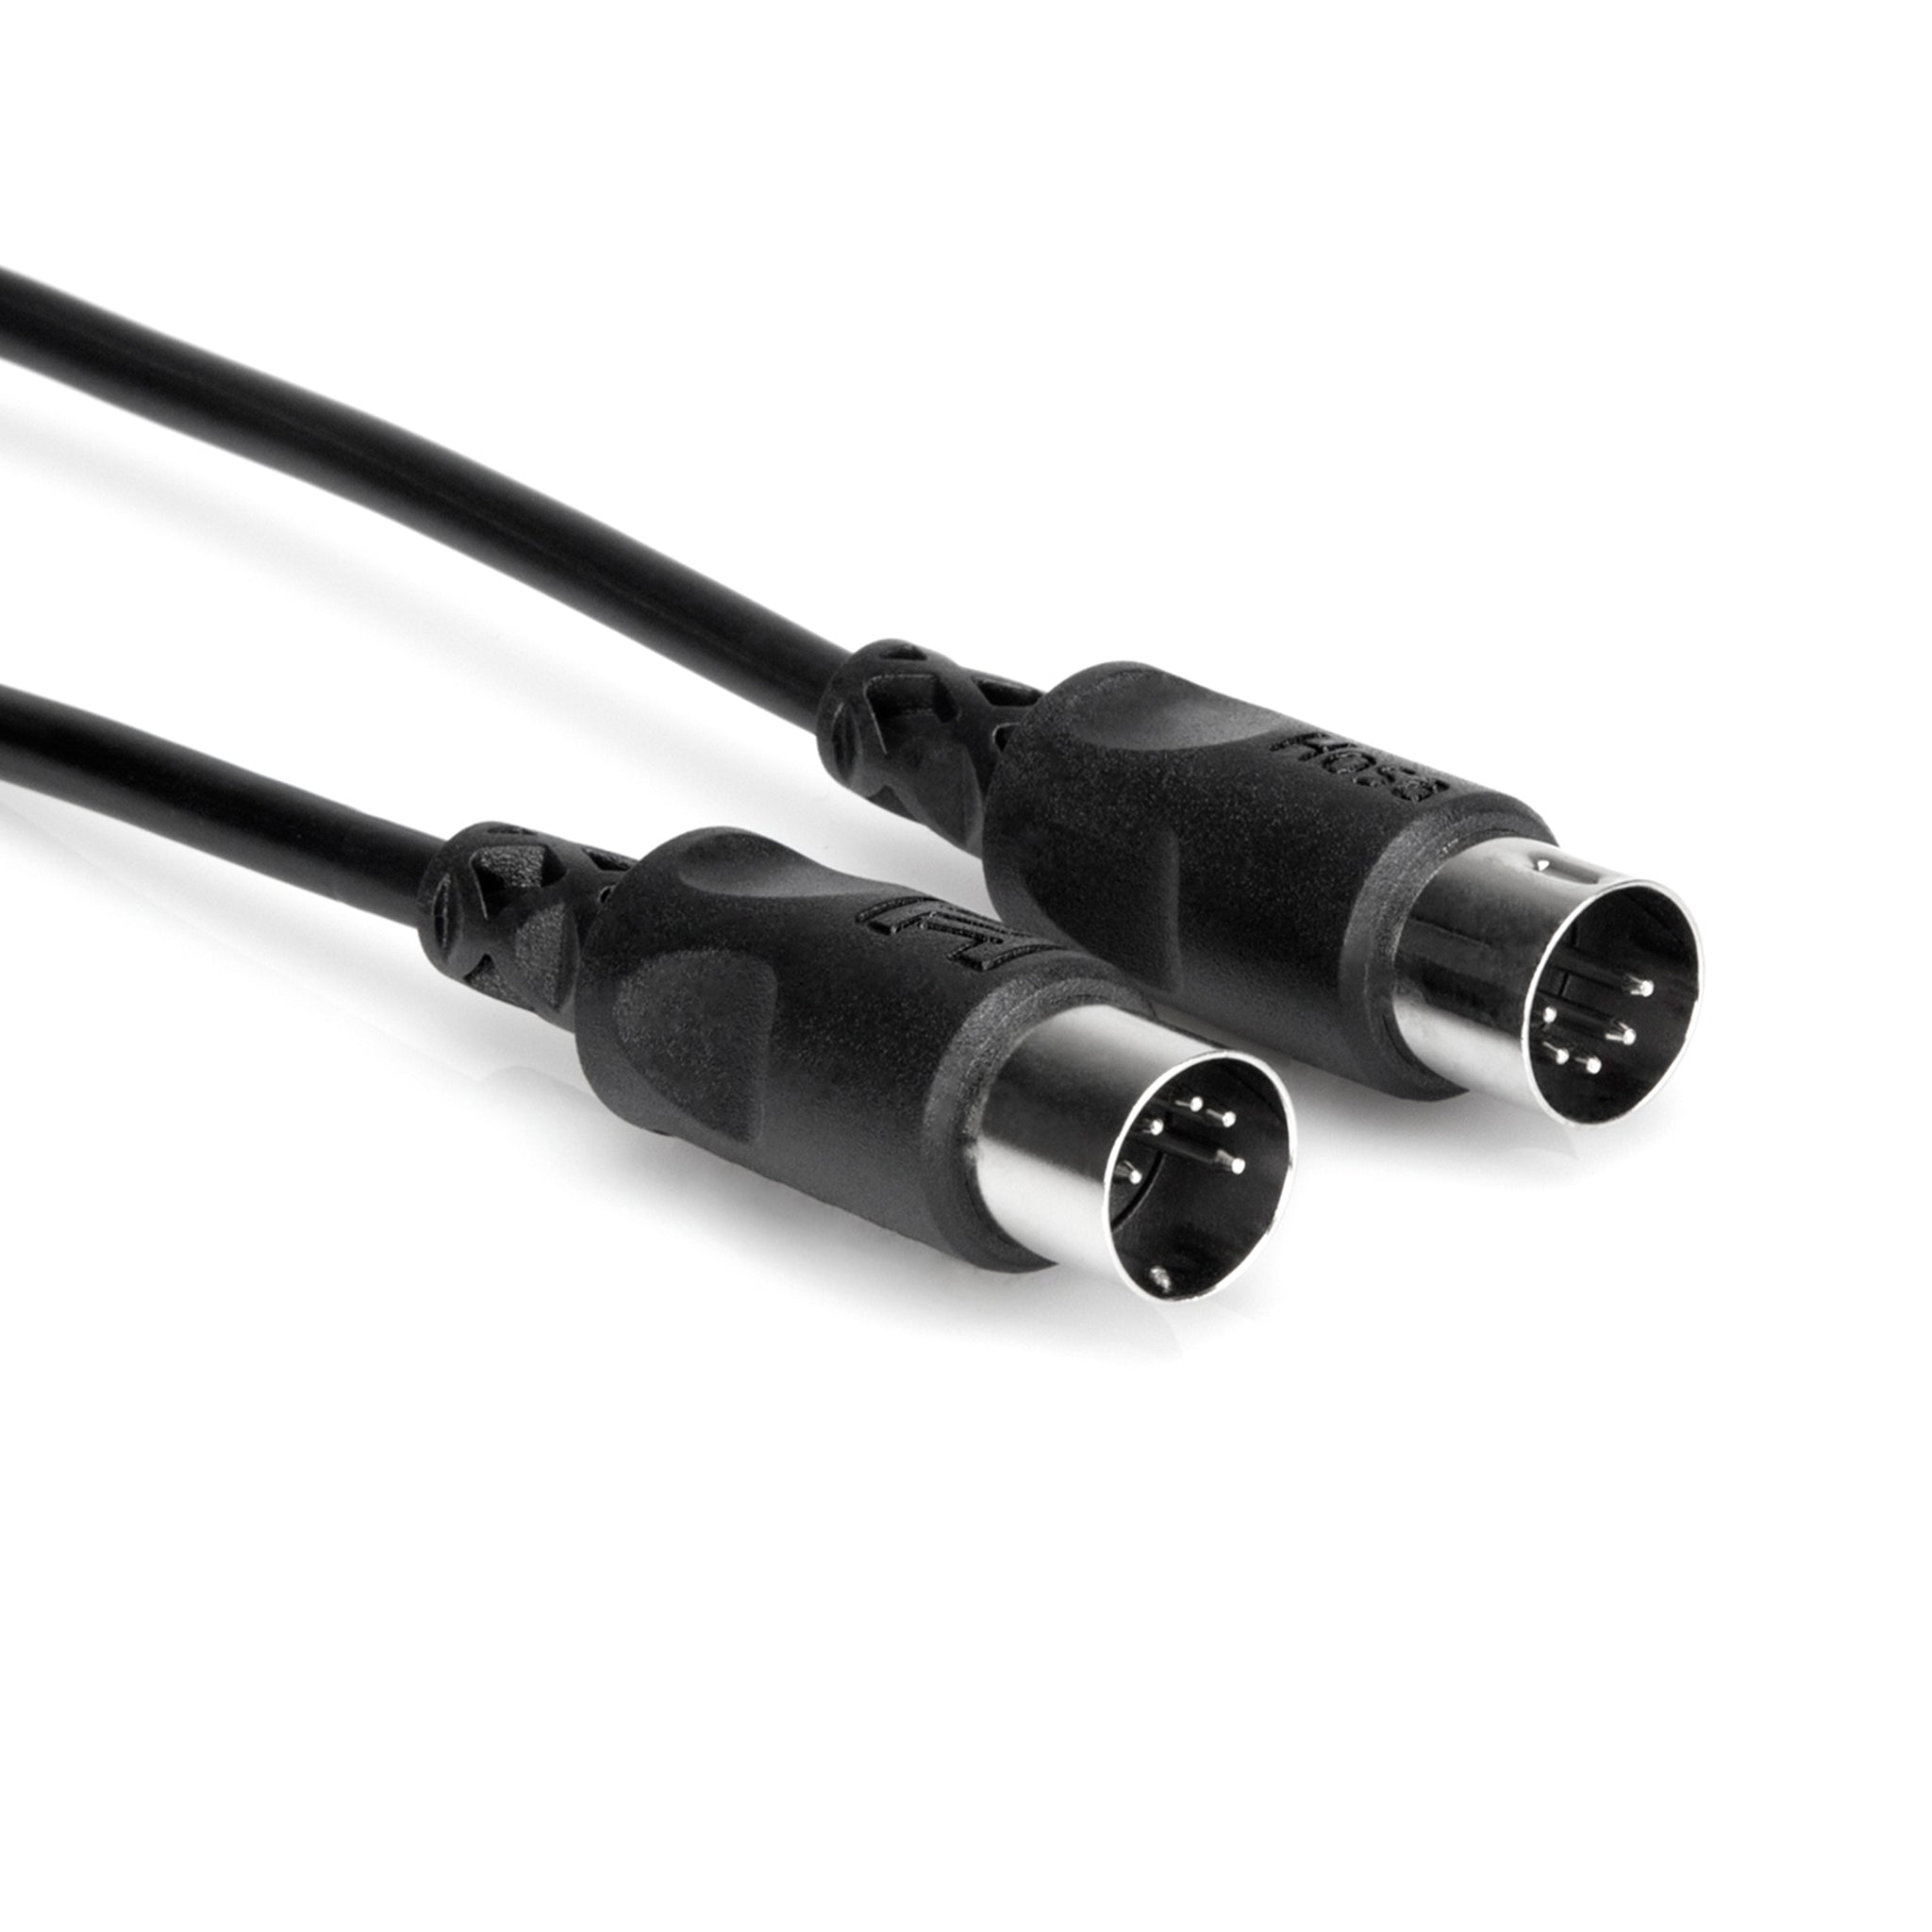 Hosa MID-325BK MIDI Cable, 25ft, Black